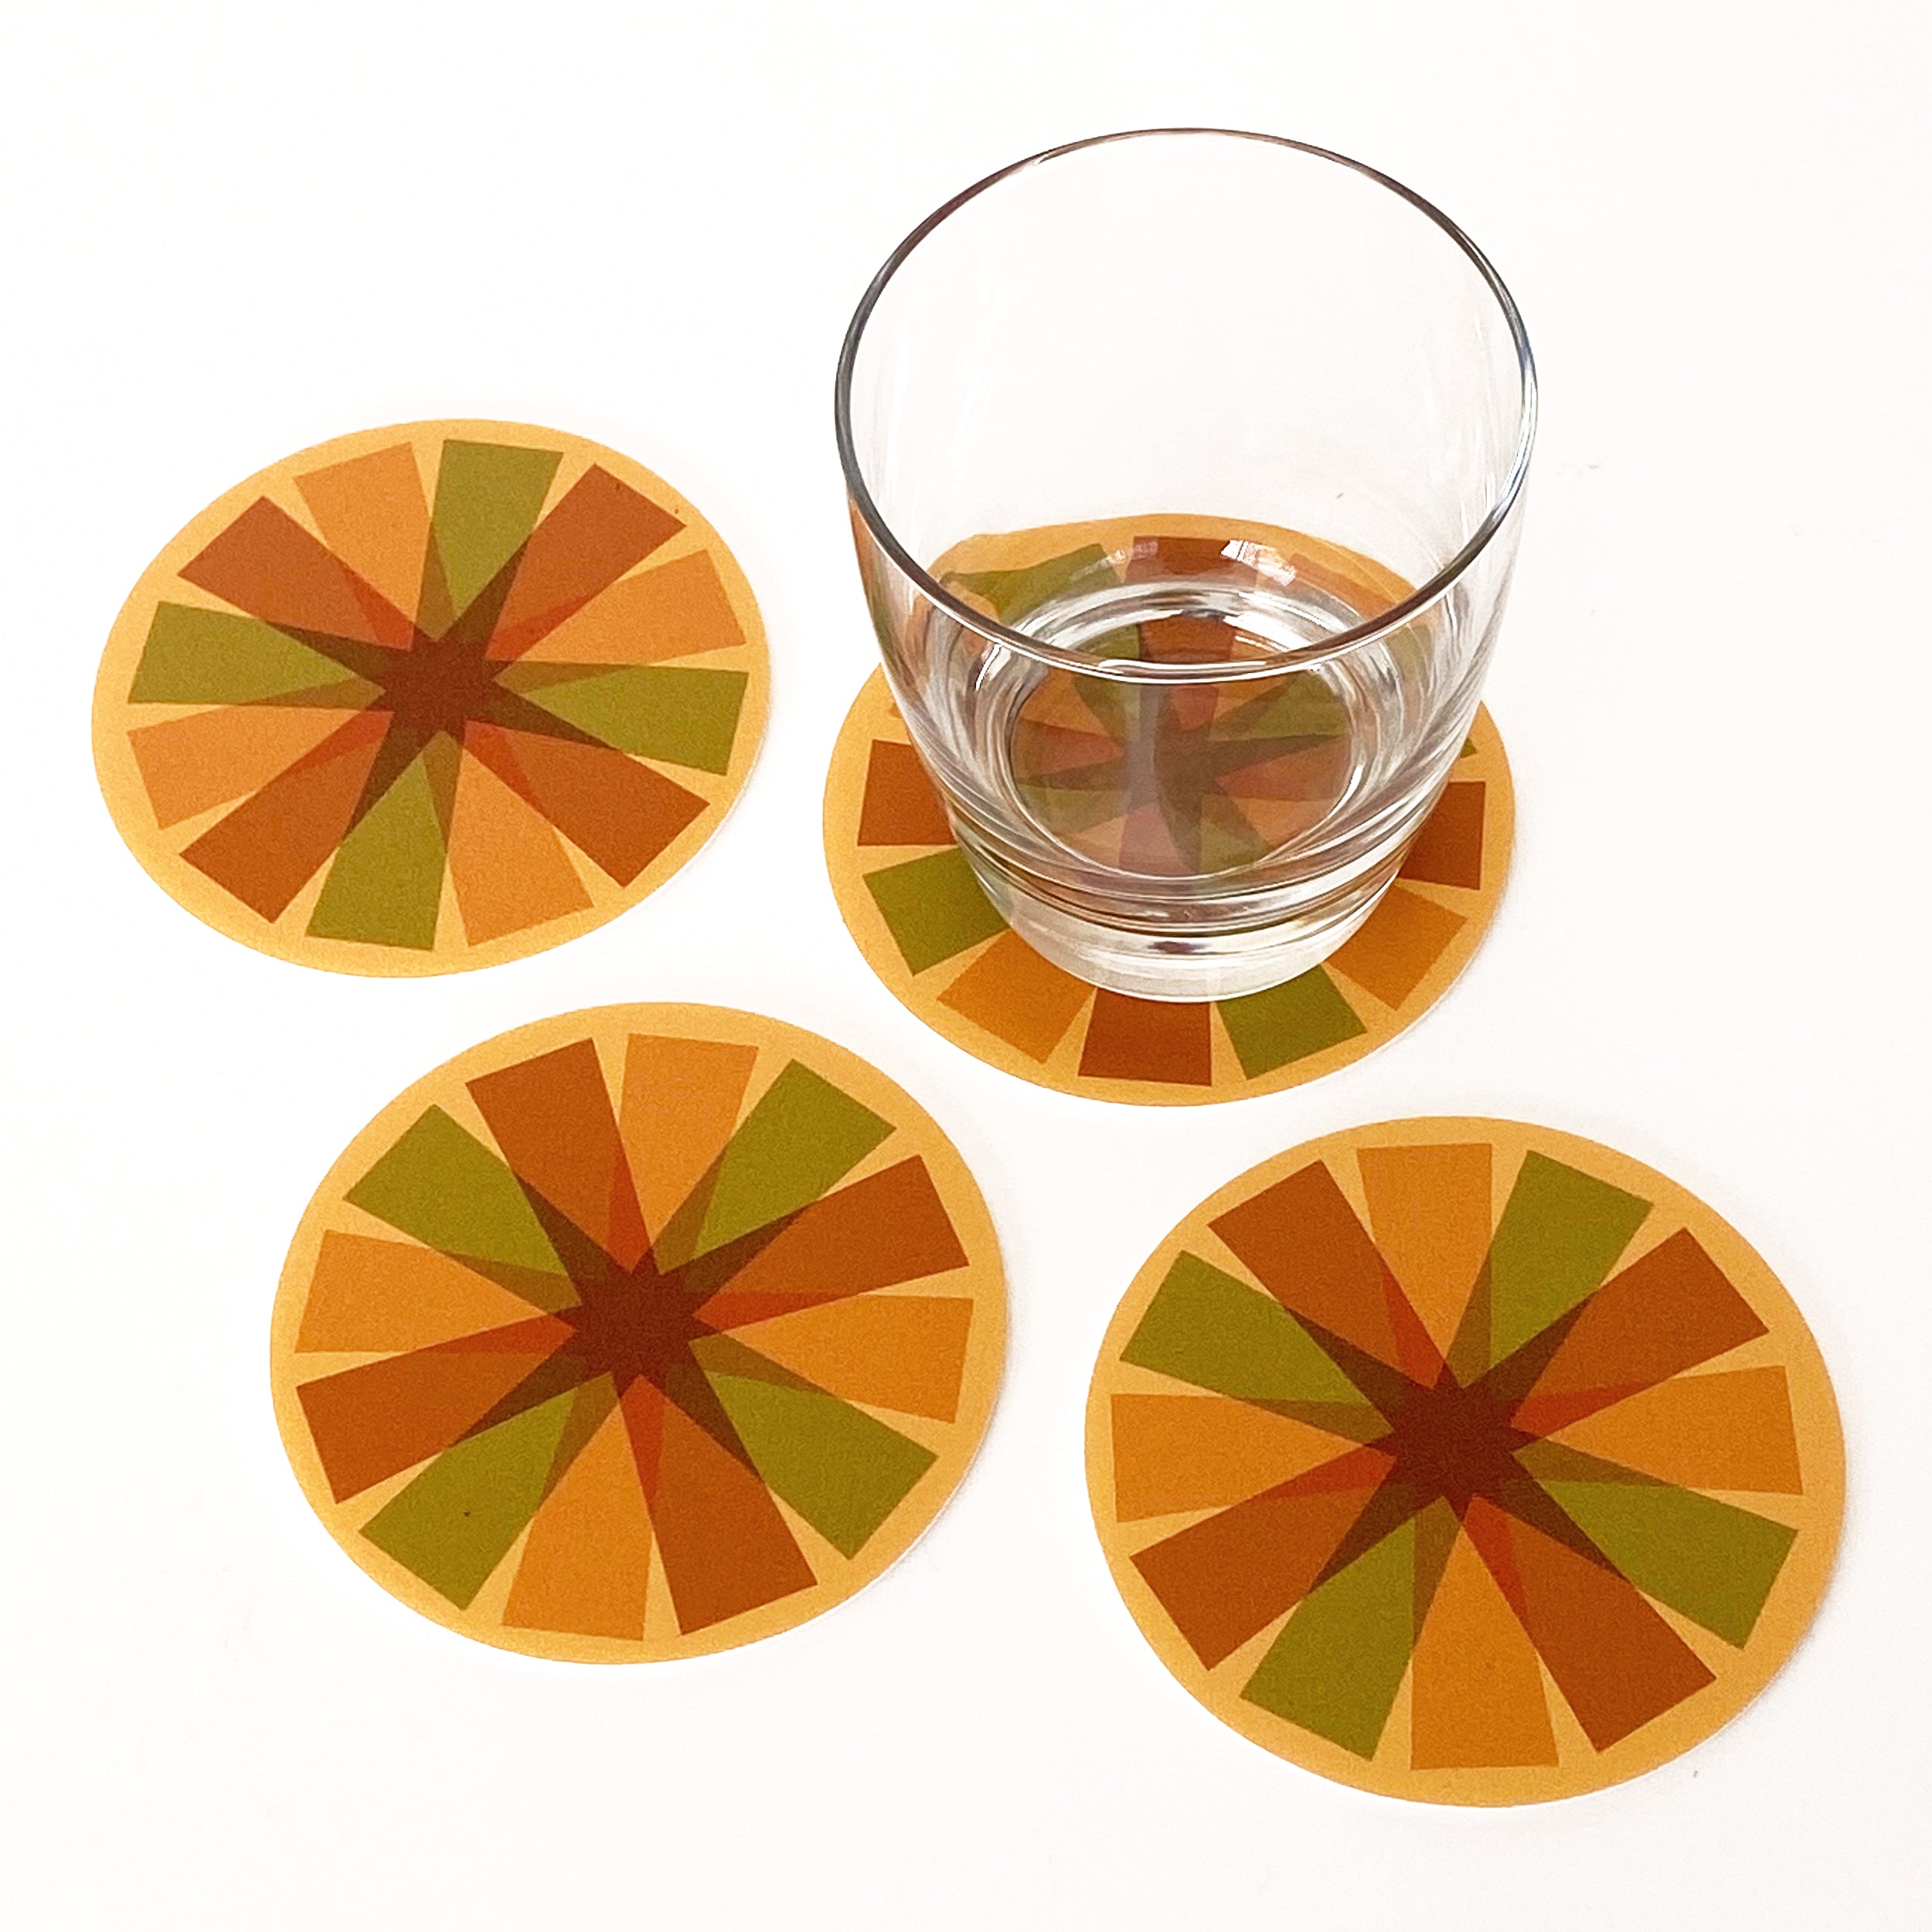 Pinwheel Vinyl Coaster Set of 8 - Orange